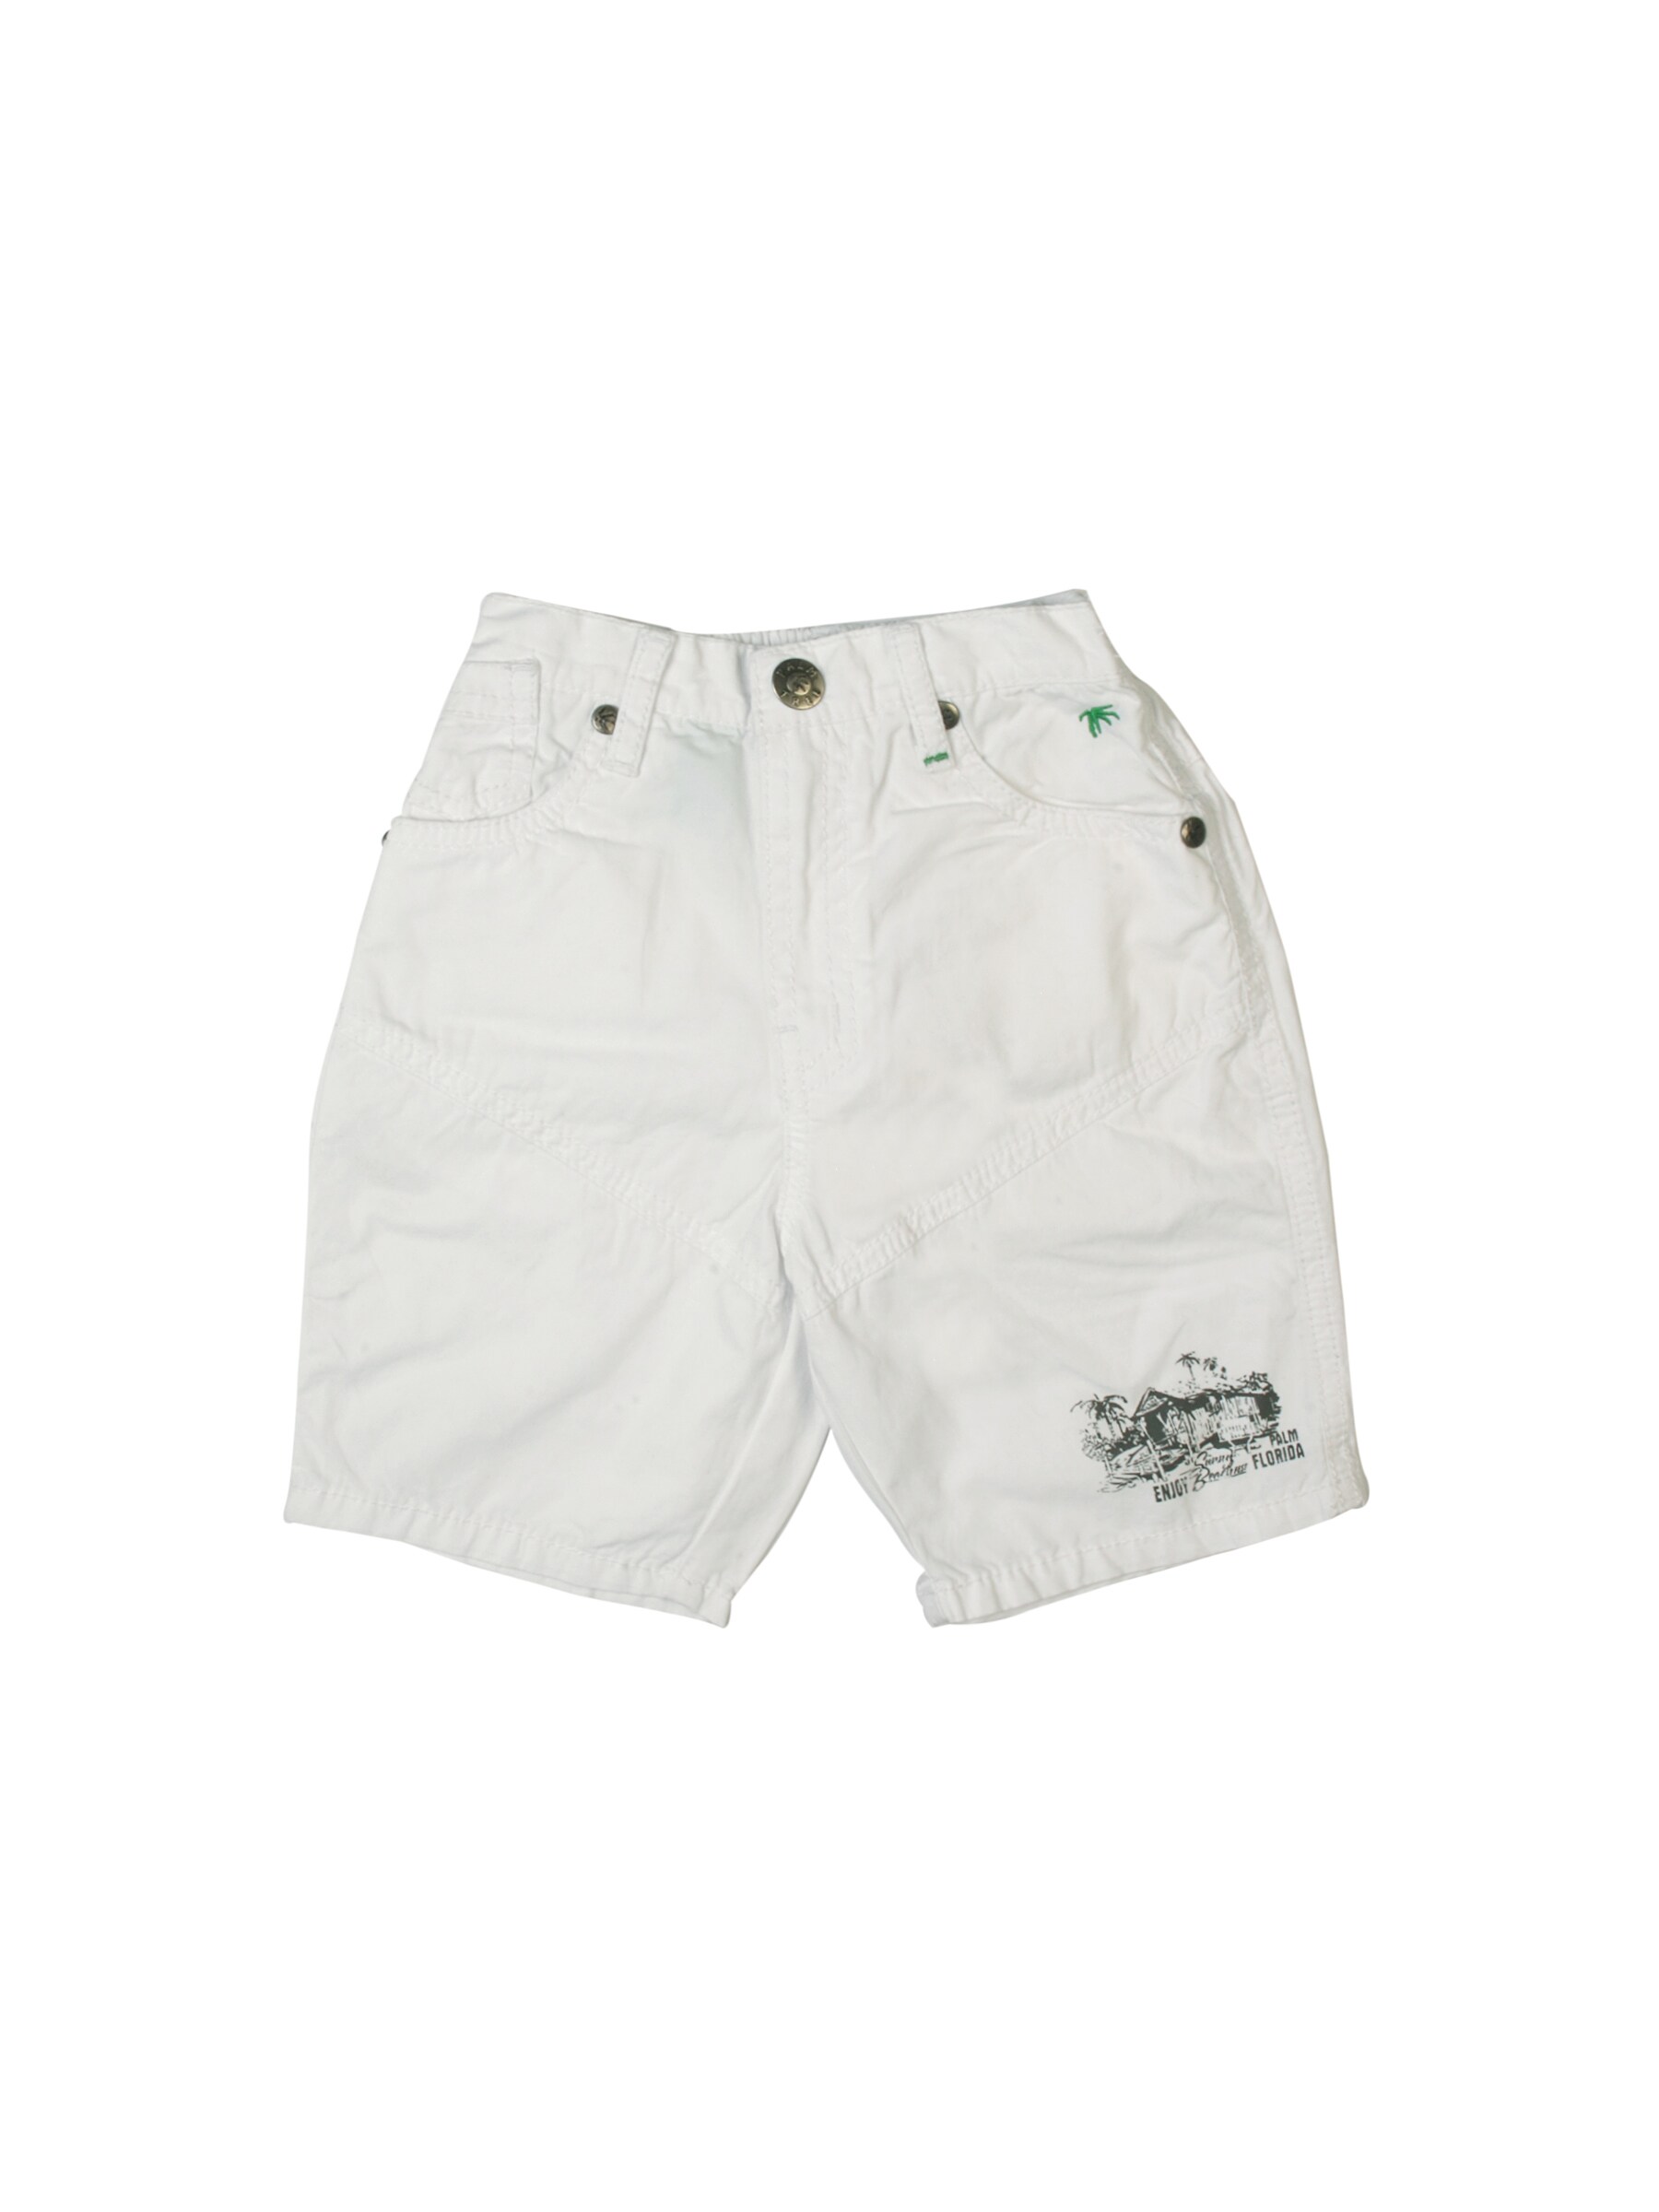 Gini and Jony Boys Beach White Shorts